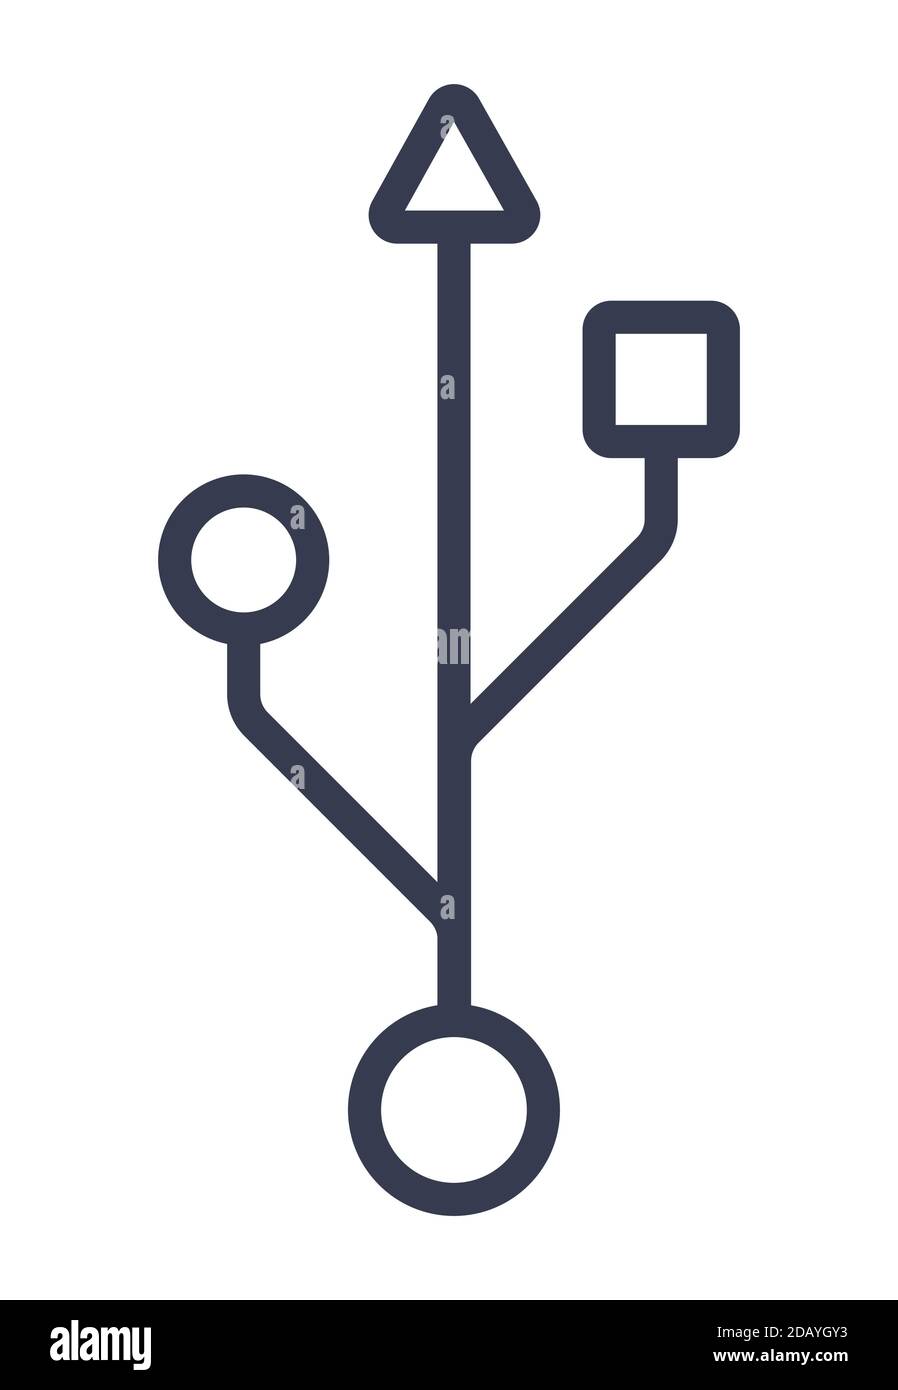 Icona di collegamento della porta USB simbolo del bus seriale universale standard industriale Illustrazione Vettoriale